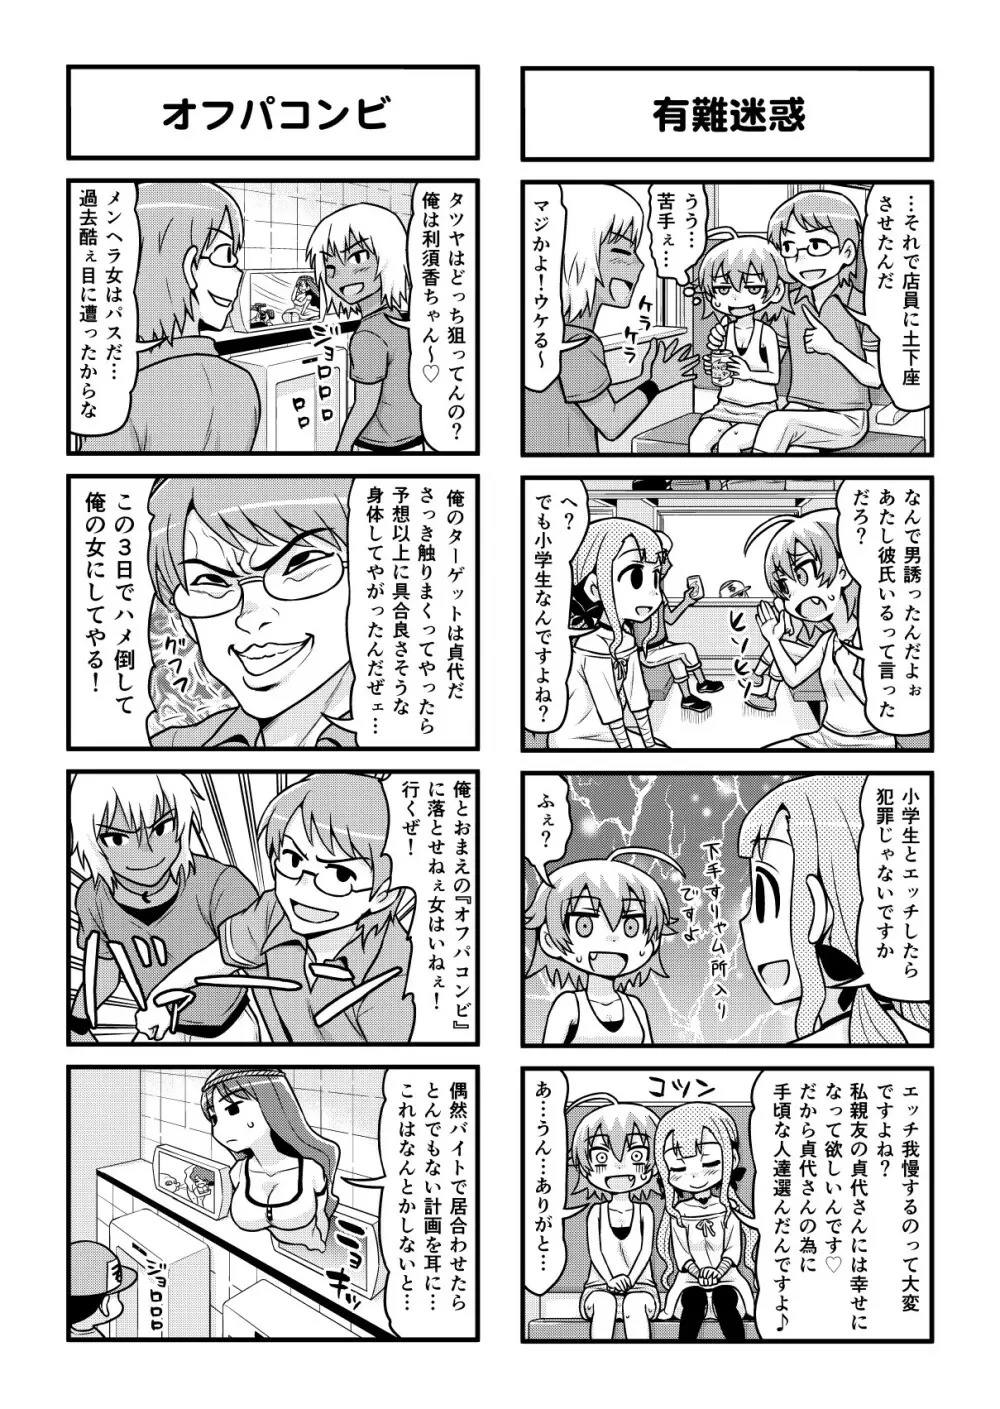 のんきBOY 1-48 - page312